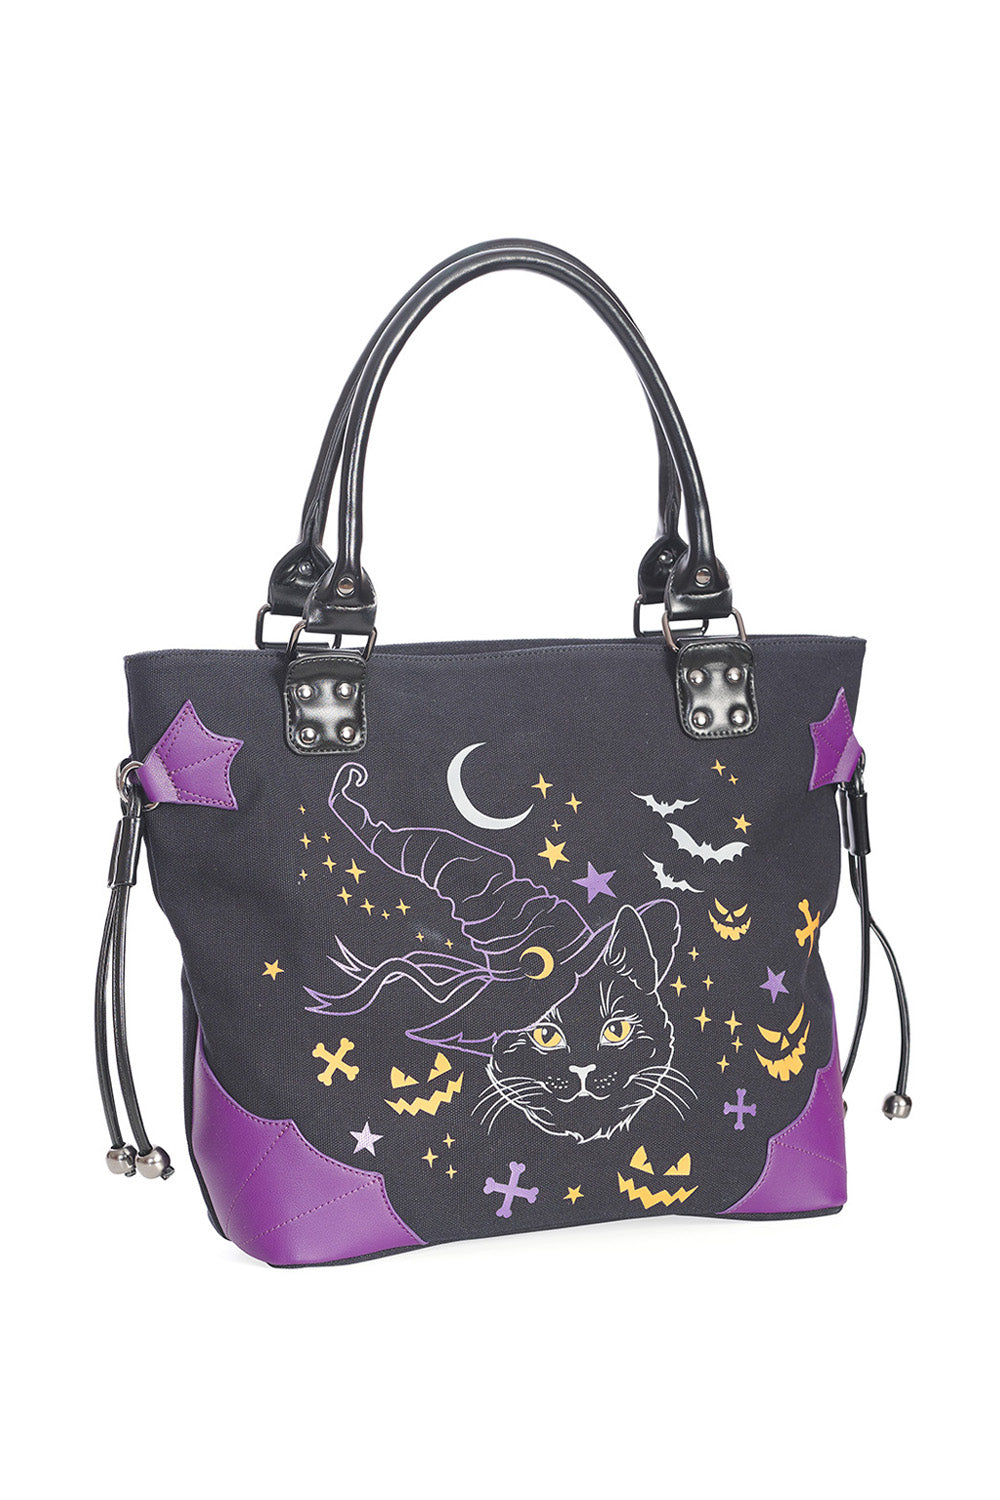 Lost Queen Women’s Halloween Handbag Black Cat Witch Spell On Me Shoulder Bag Purse